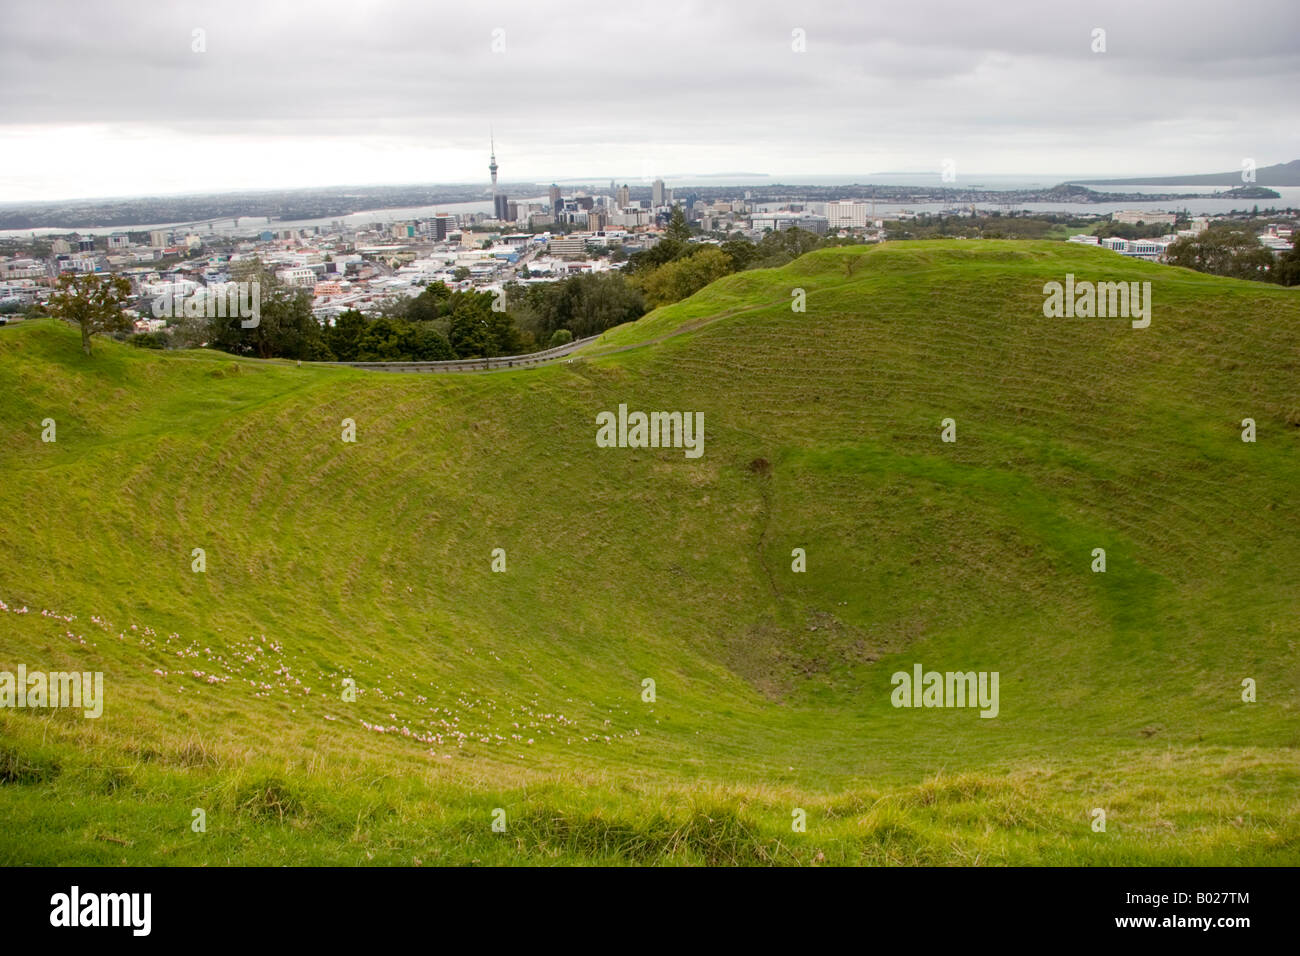 Auckland city view from Mt Eden cratère volcanique Nouvelle Zélande Banque D'Images